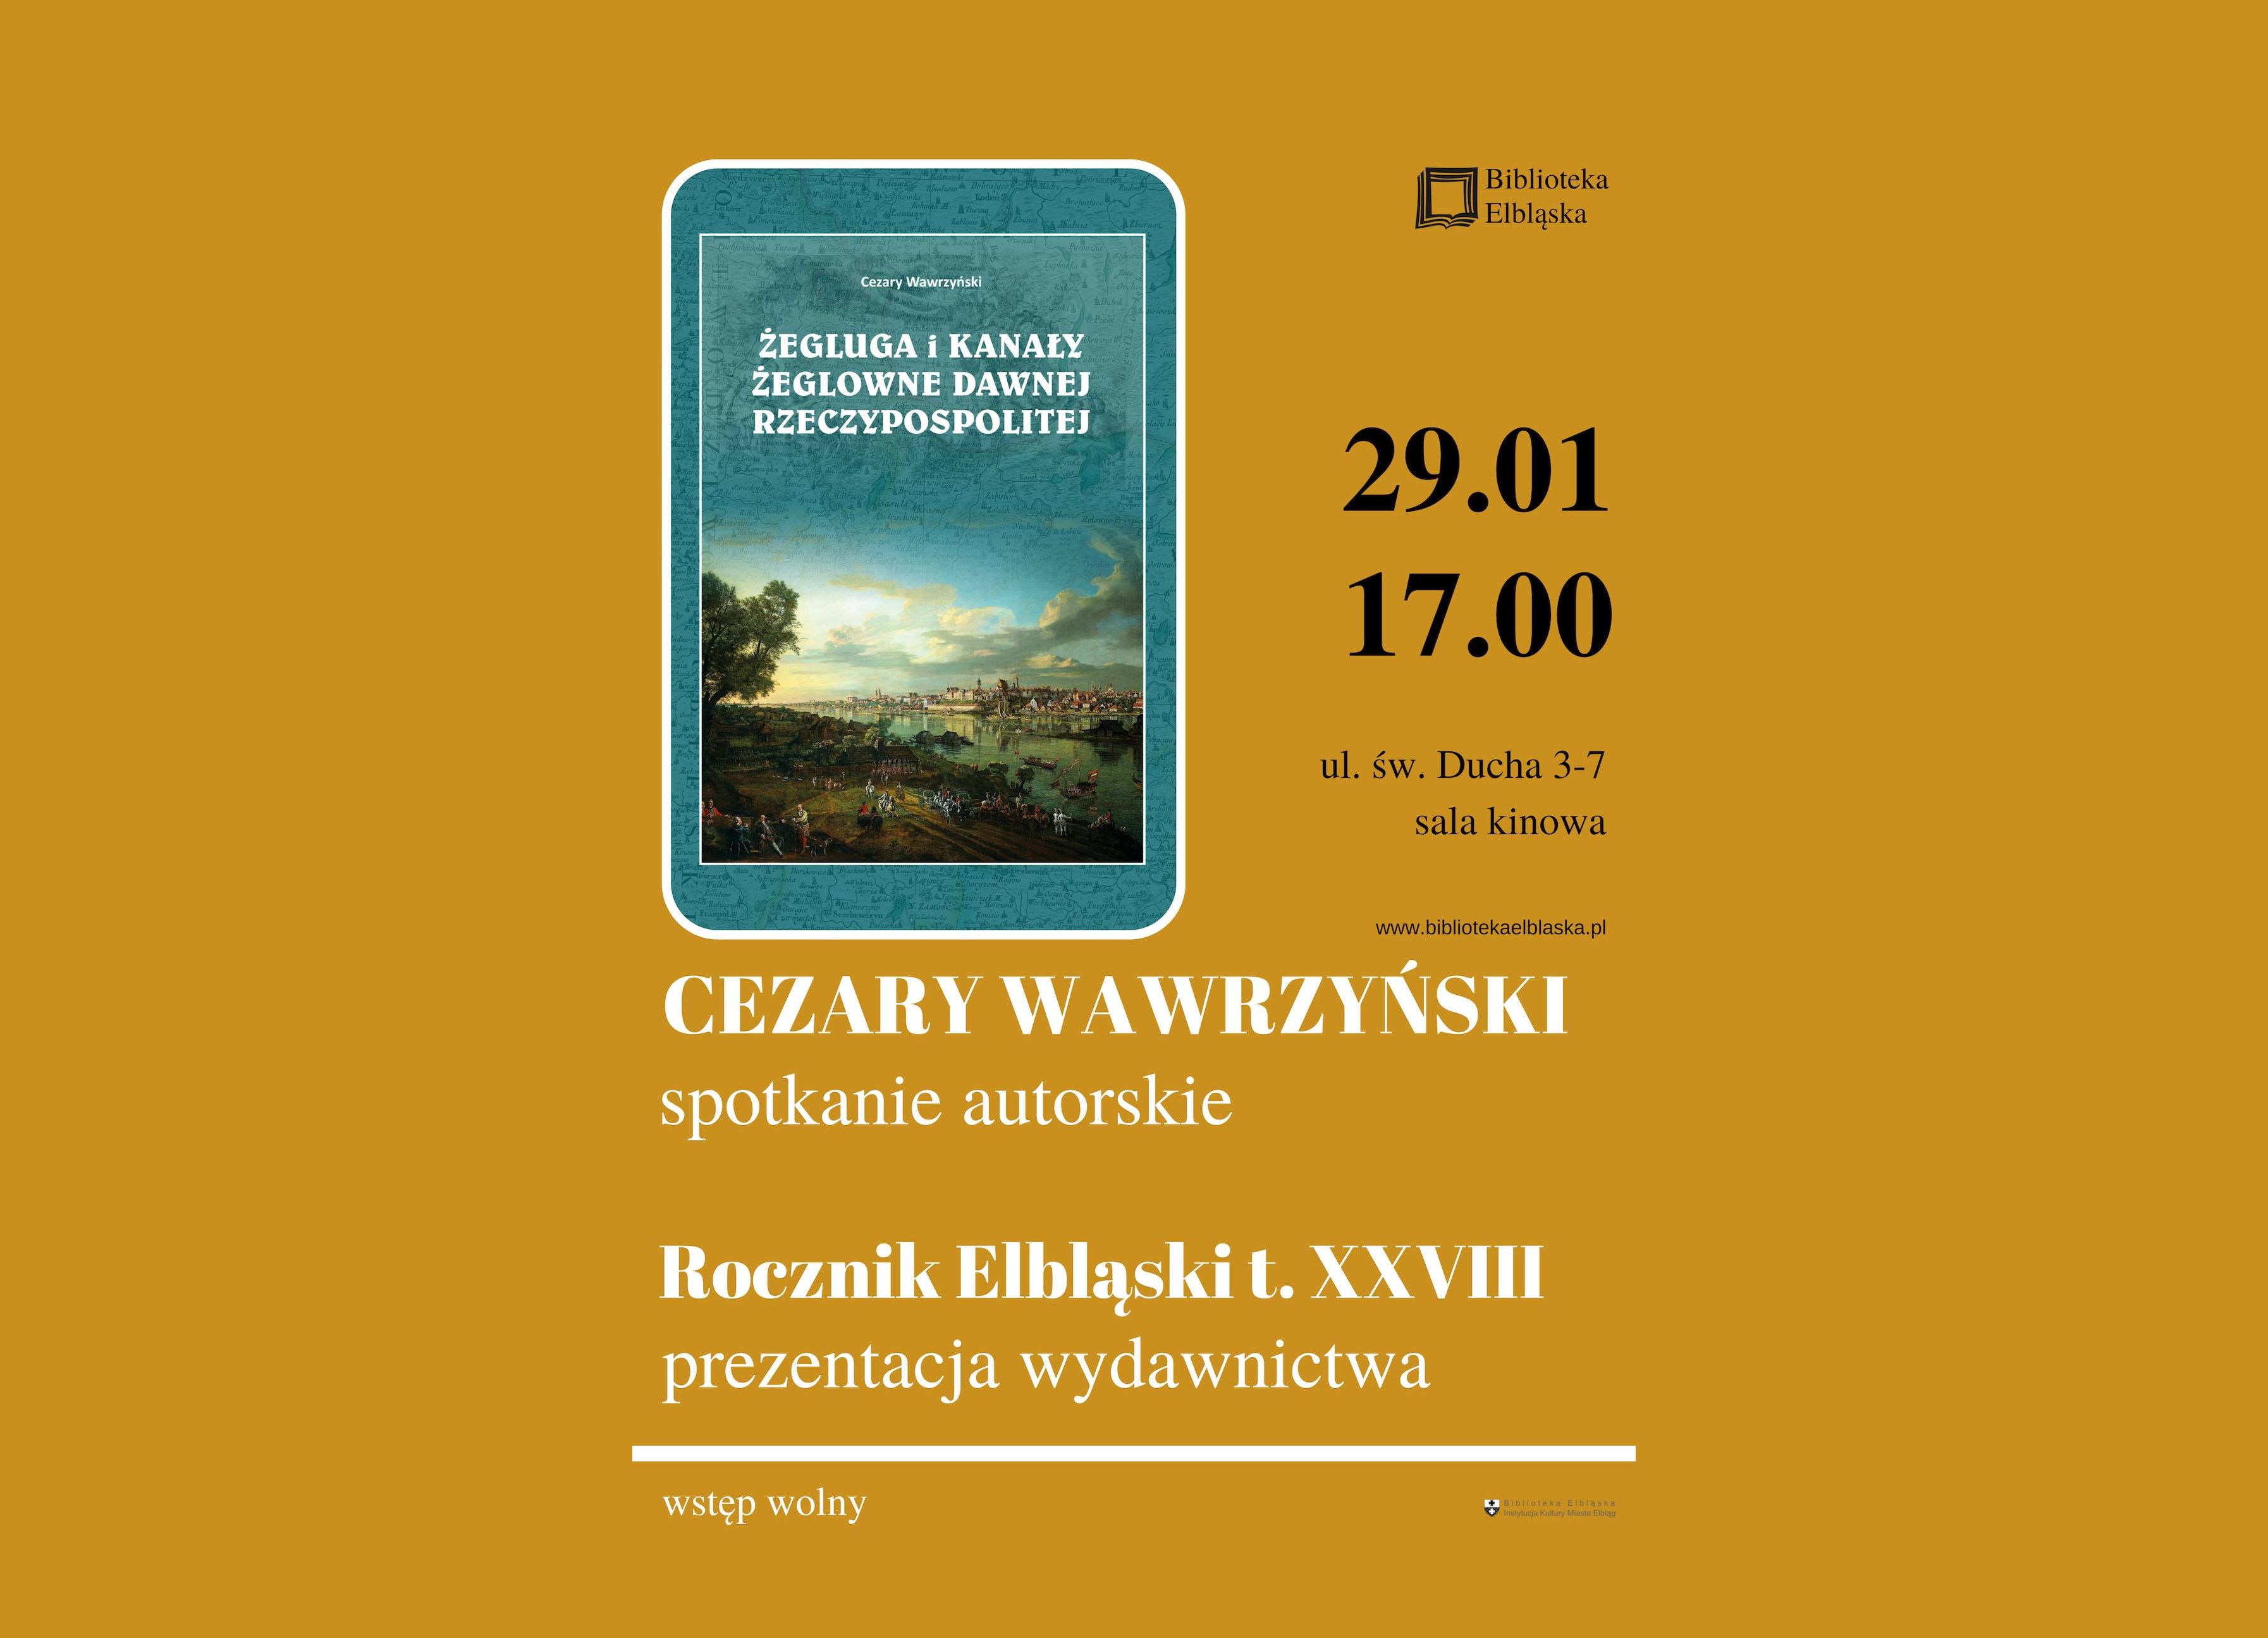 Promocja „Rocznika Elbląskiego” i spotkanie z Cezarym Wawrzyńskim